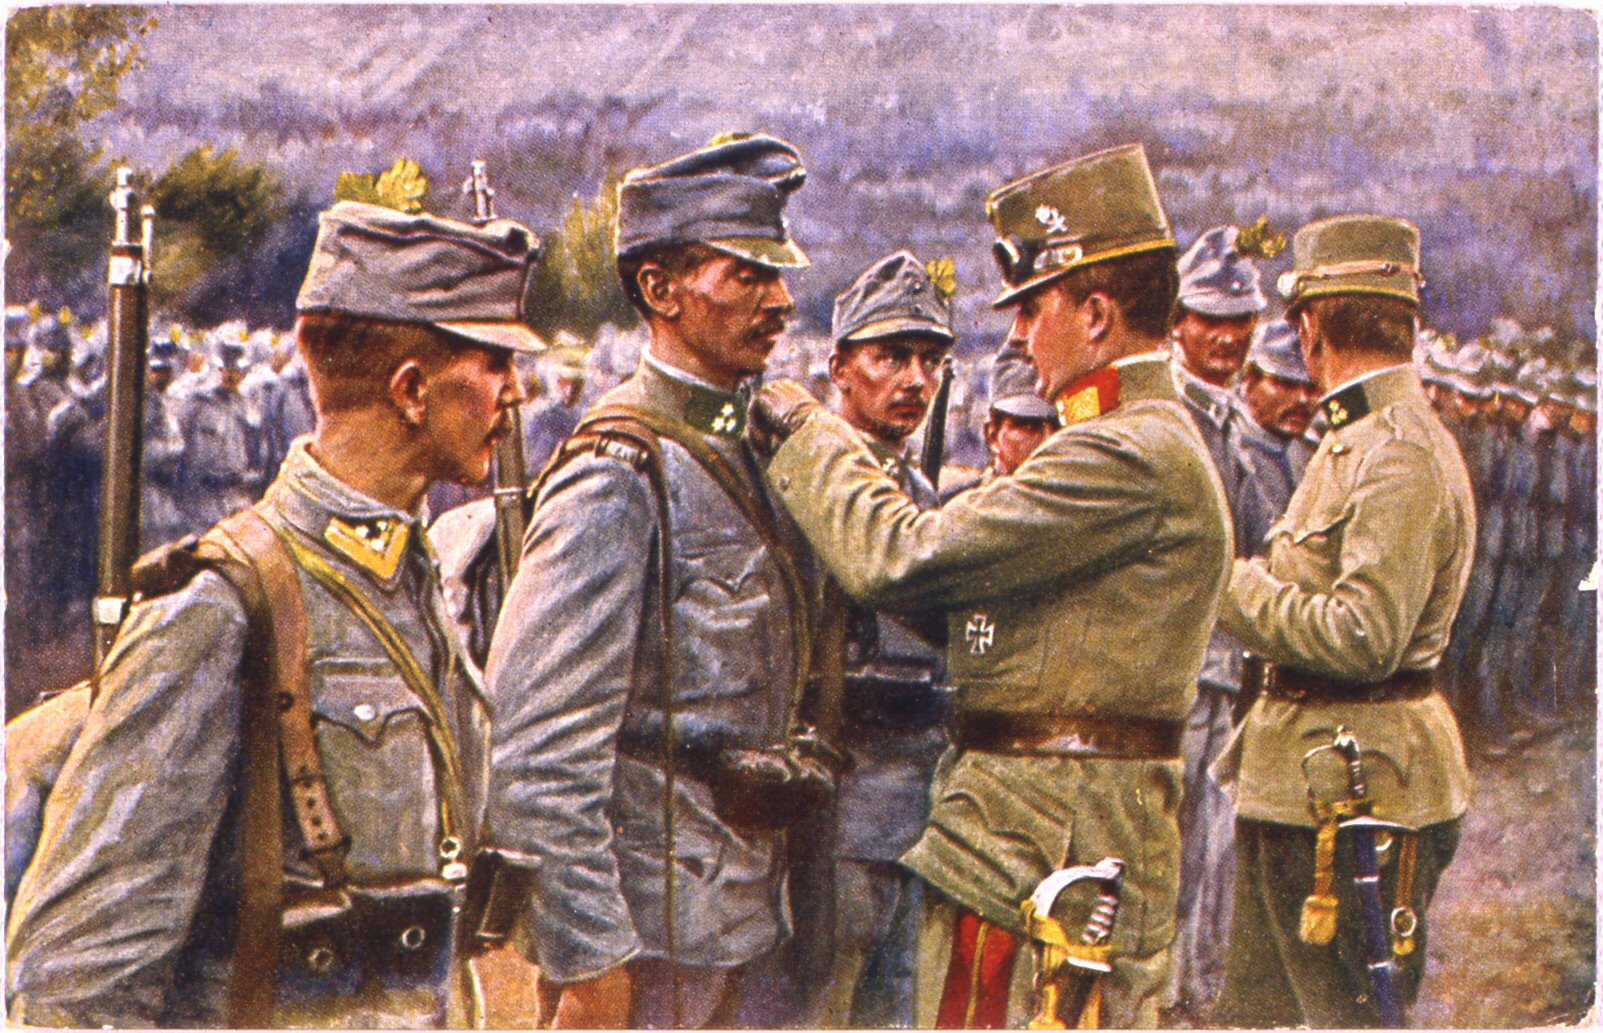 cartolina con soggetto militare (i guerra mondiale)